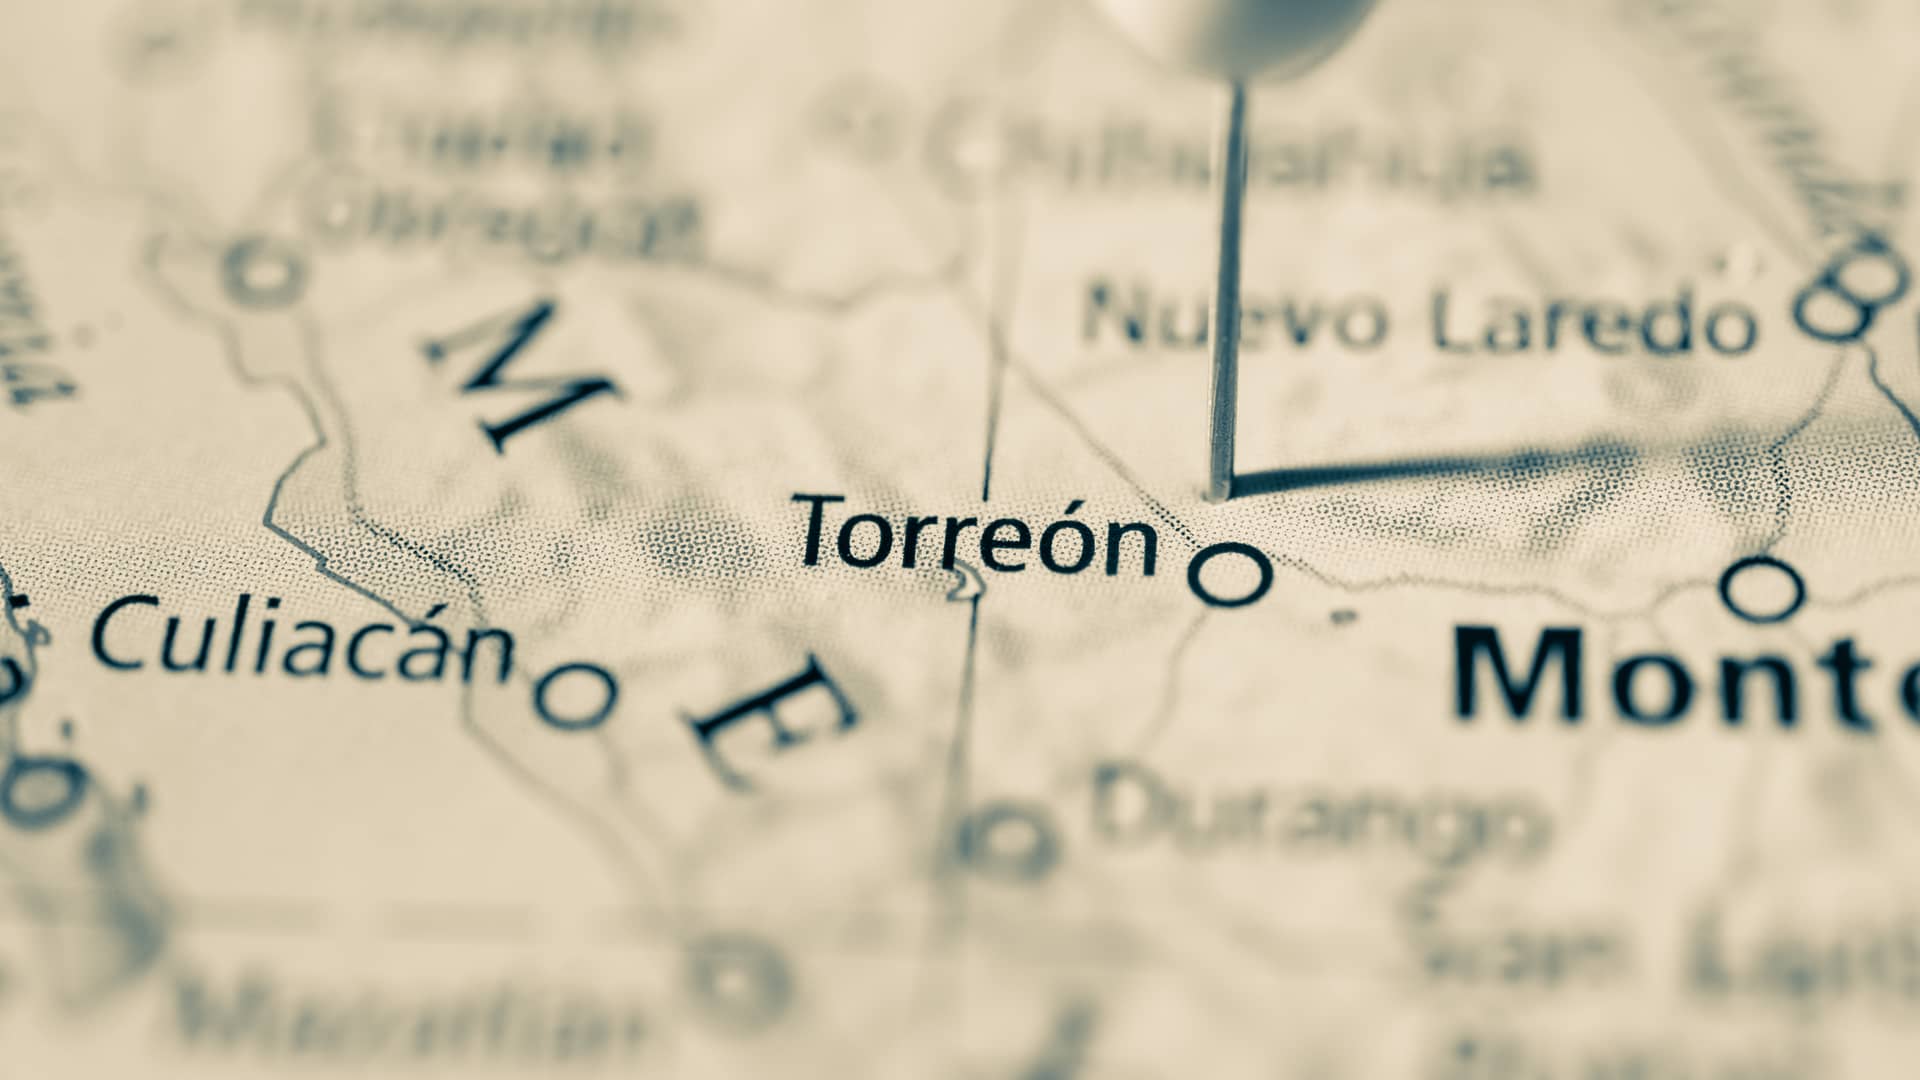 Internet Torreón: ¿Cómo contratar el servicio? | Junio 2021